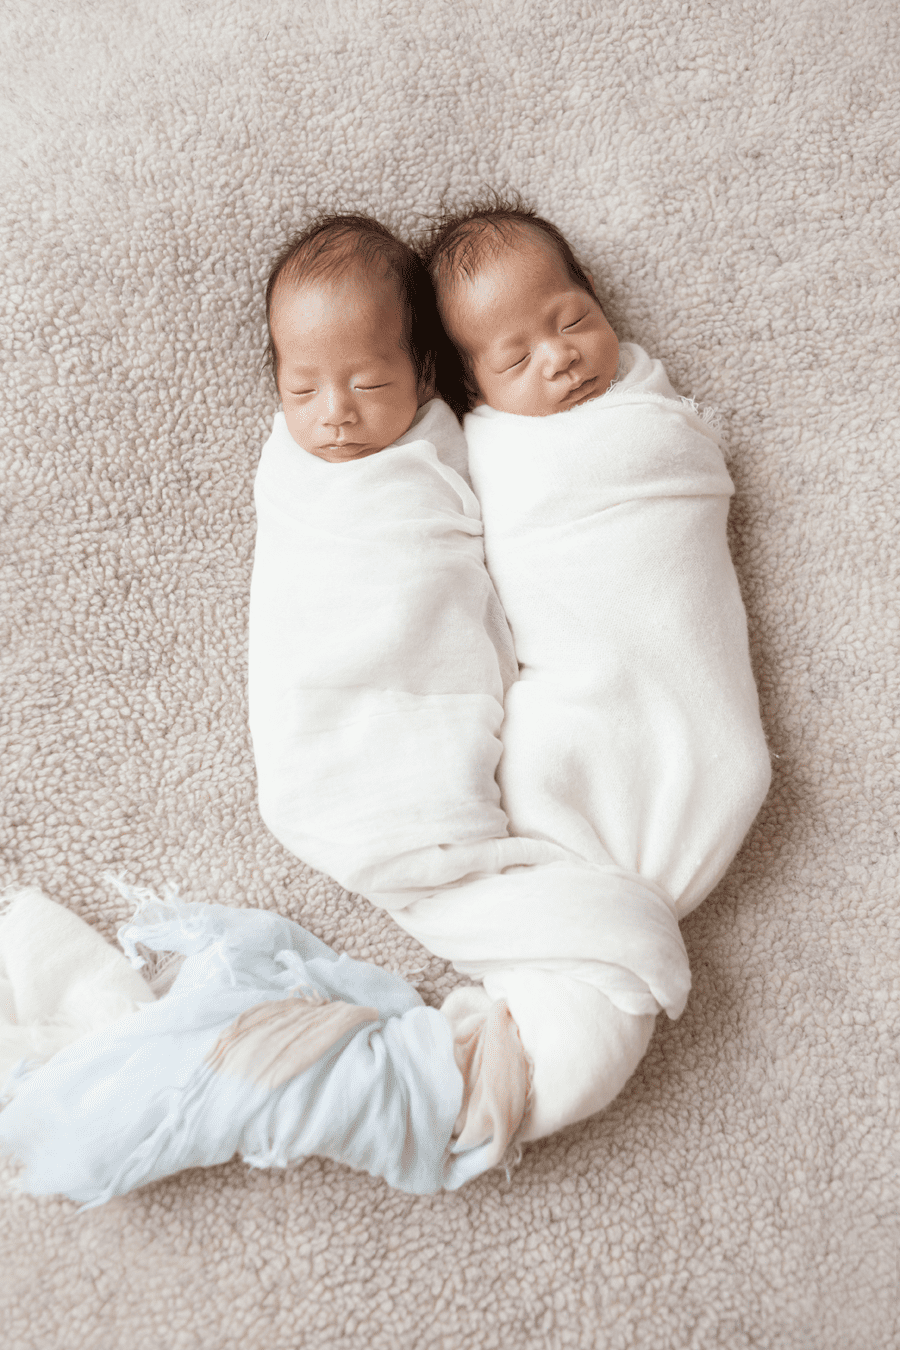 Chino-Hills-newborn-photographer